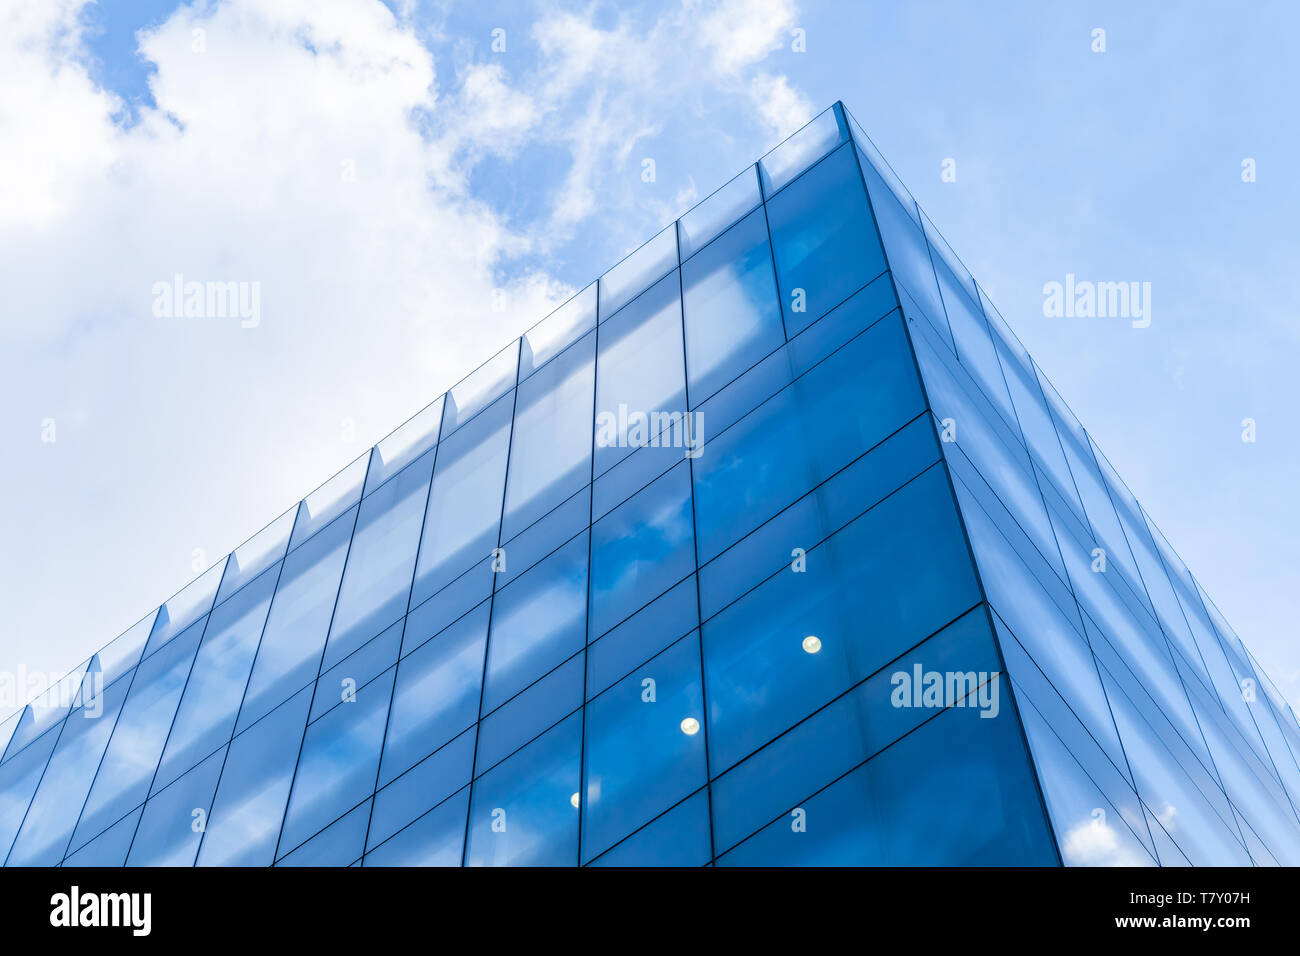 La arquitectura comercial moderno abstracto fragmento, esquina de paredes de vidrio y acero brillante bajo el azul cielo nublado Foto de stock